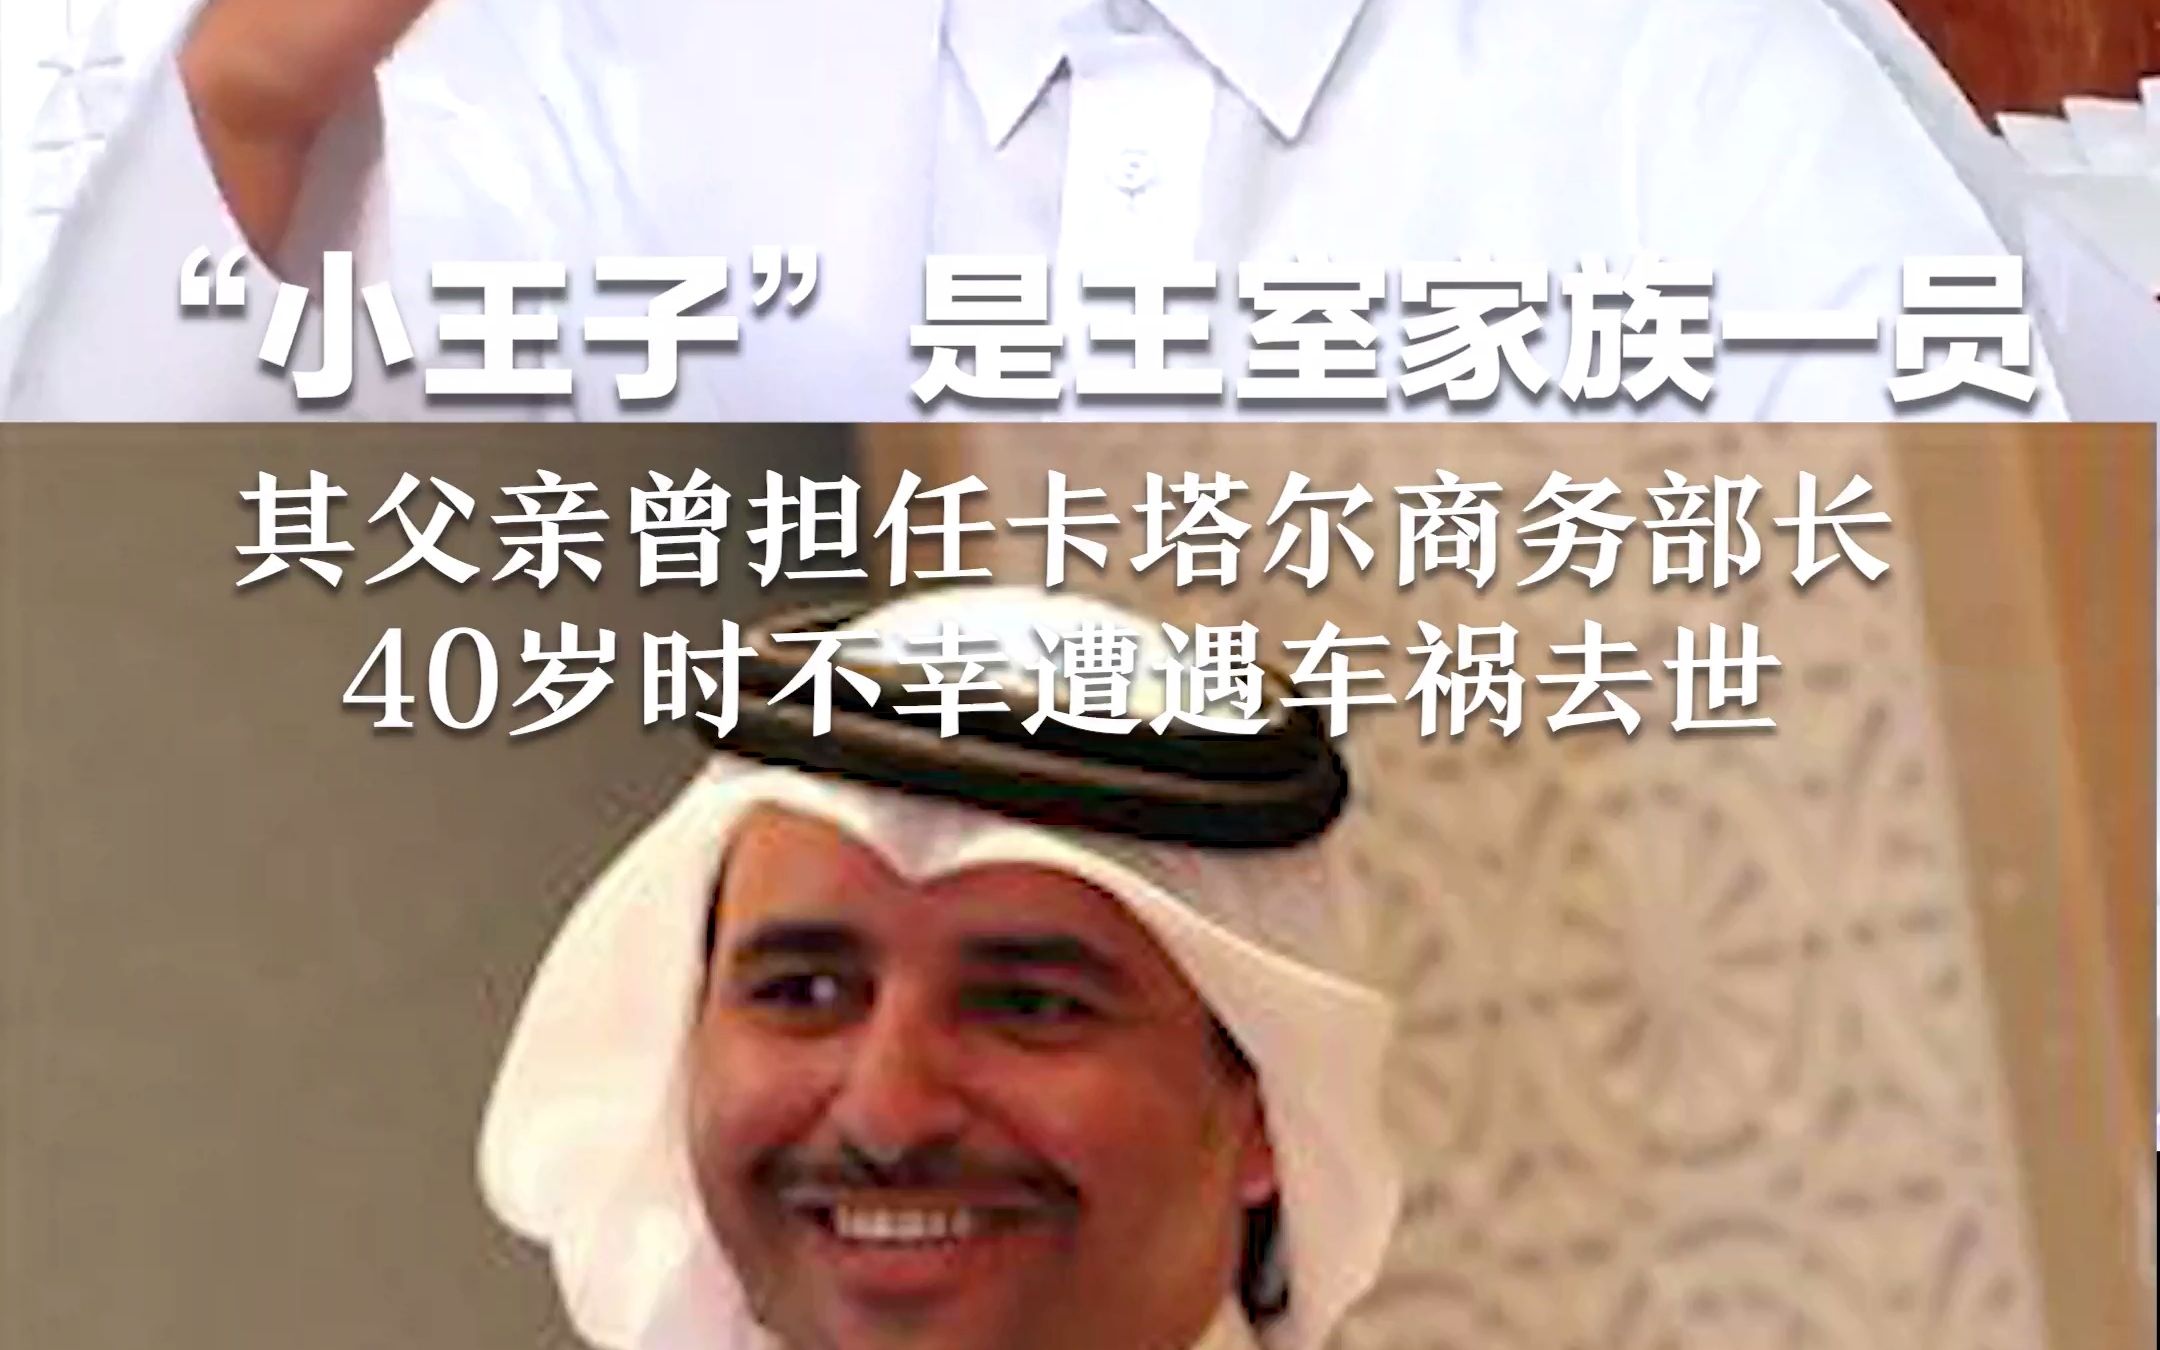 “小王子”是王室家族一员，其父亲曾担任卡塔尔商务部长，40岁时不幸遭遇车祸去世